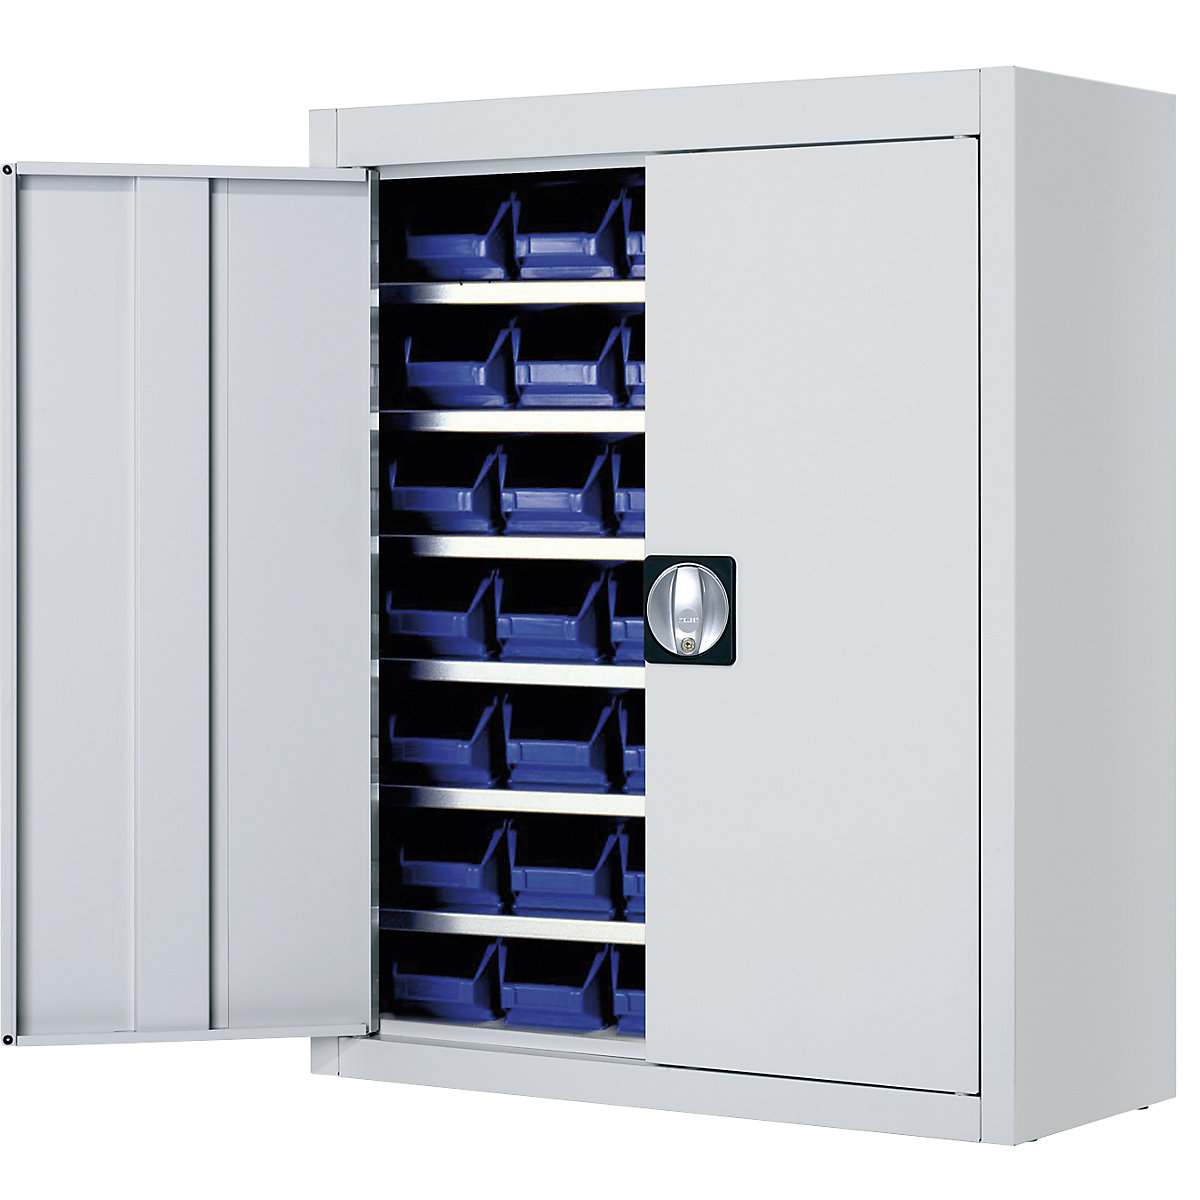 Skladišni ormar s otvorenim skladišnim kutijama – mauser, VxŠxD 820 x 680 x 280 mm, u jednoj boji, u sivoj boji, 42 kutije-3